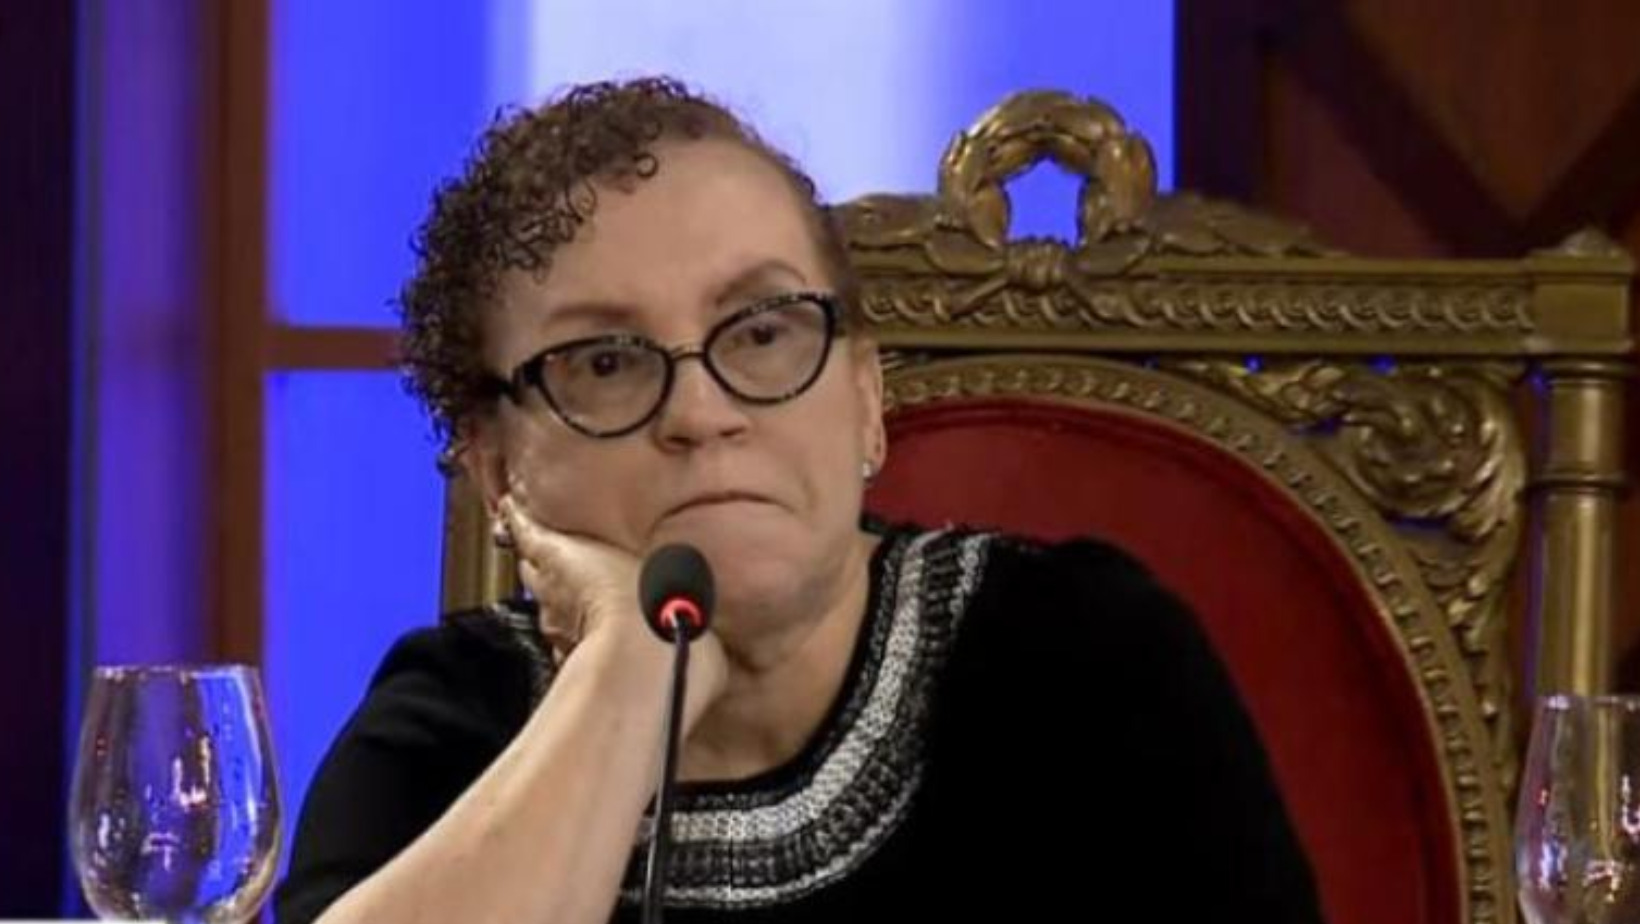 Momento en el que la procuradora General de la República Miriam Germán rompe en llanto, durante la entrevista realizada a Yildalina Noemí Taten Brache, por parte del TC. FOTO: Fuente externa